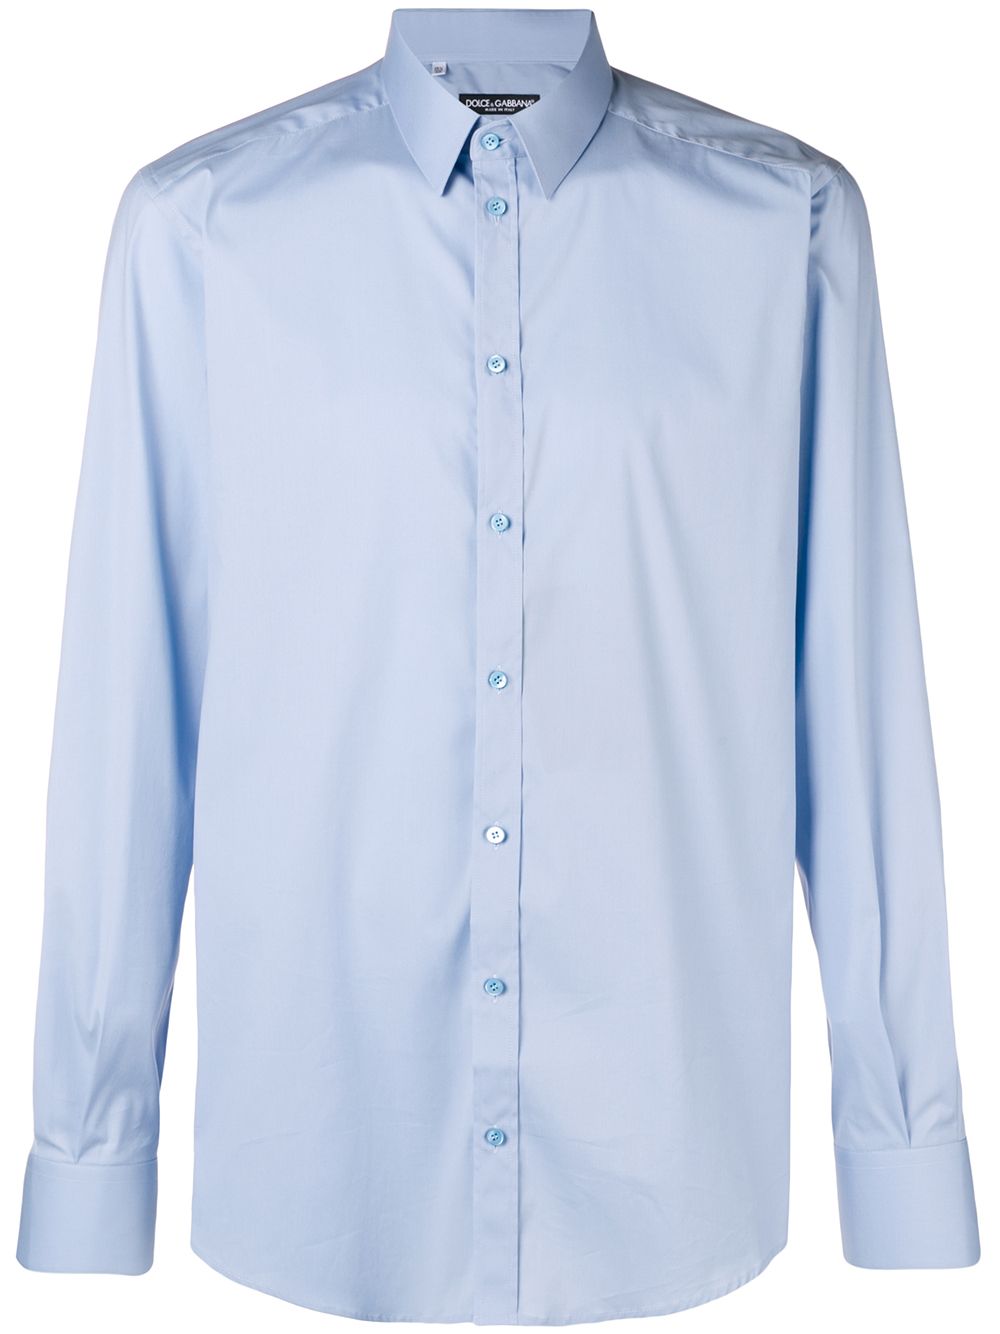 Long sleeve light blue shirt